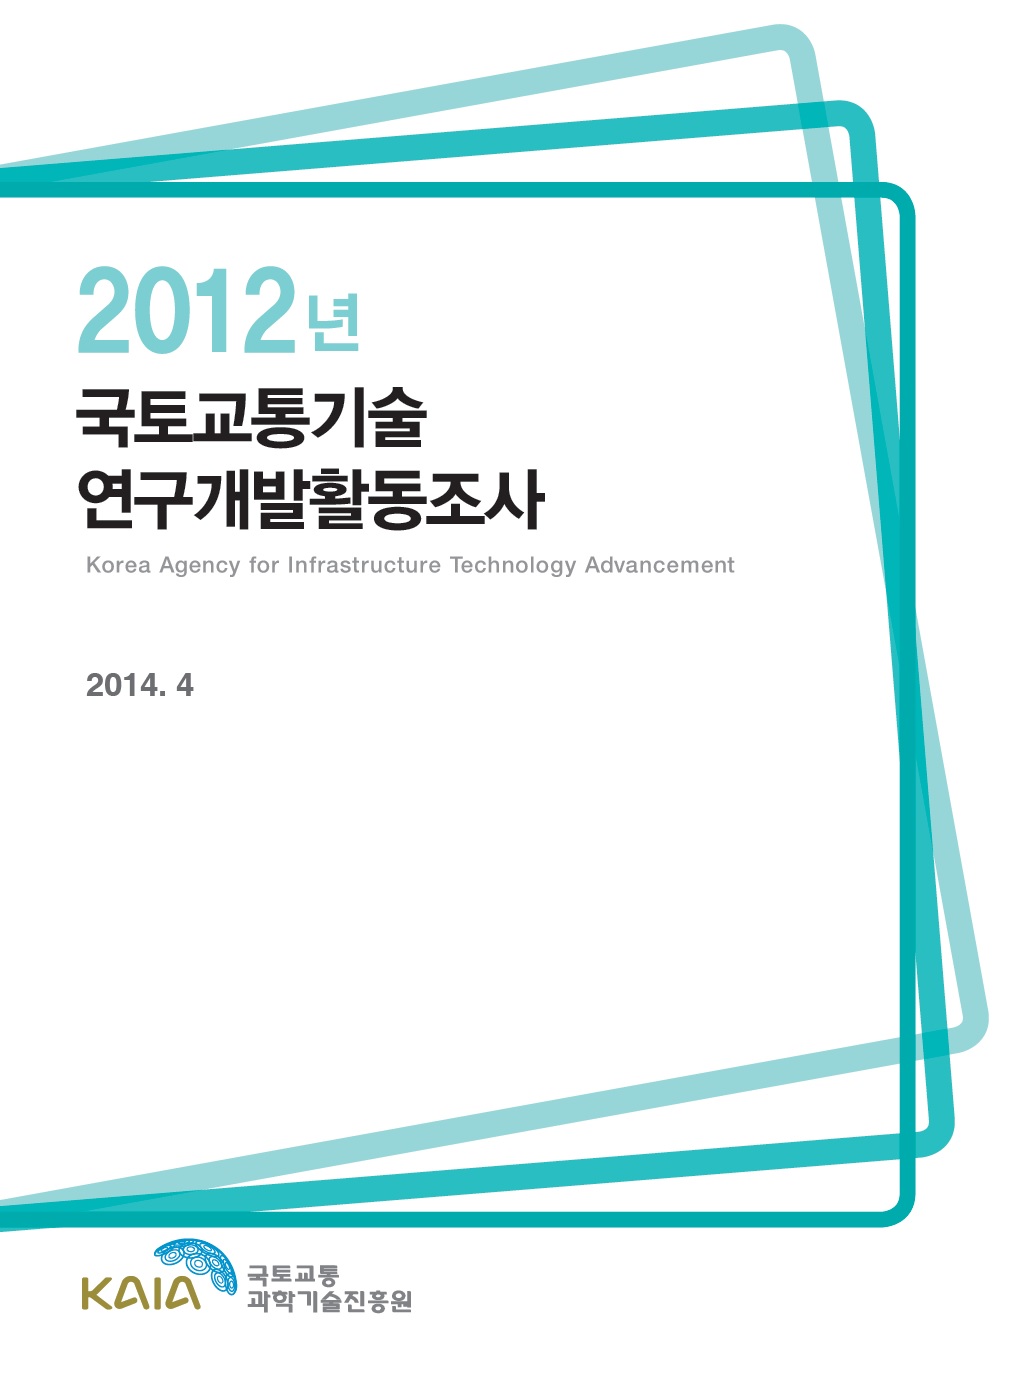 [활동조사] 2012년도 국토교통기술연구개발활동조사 보고서